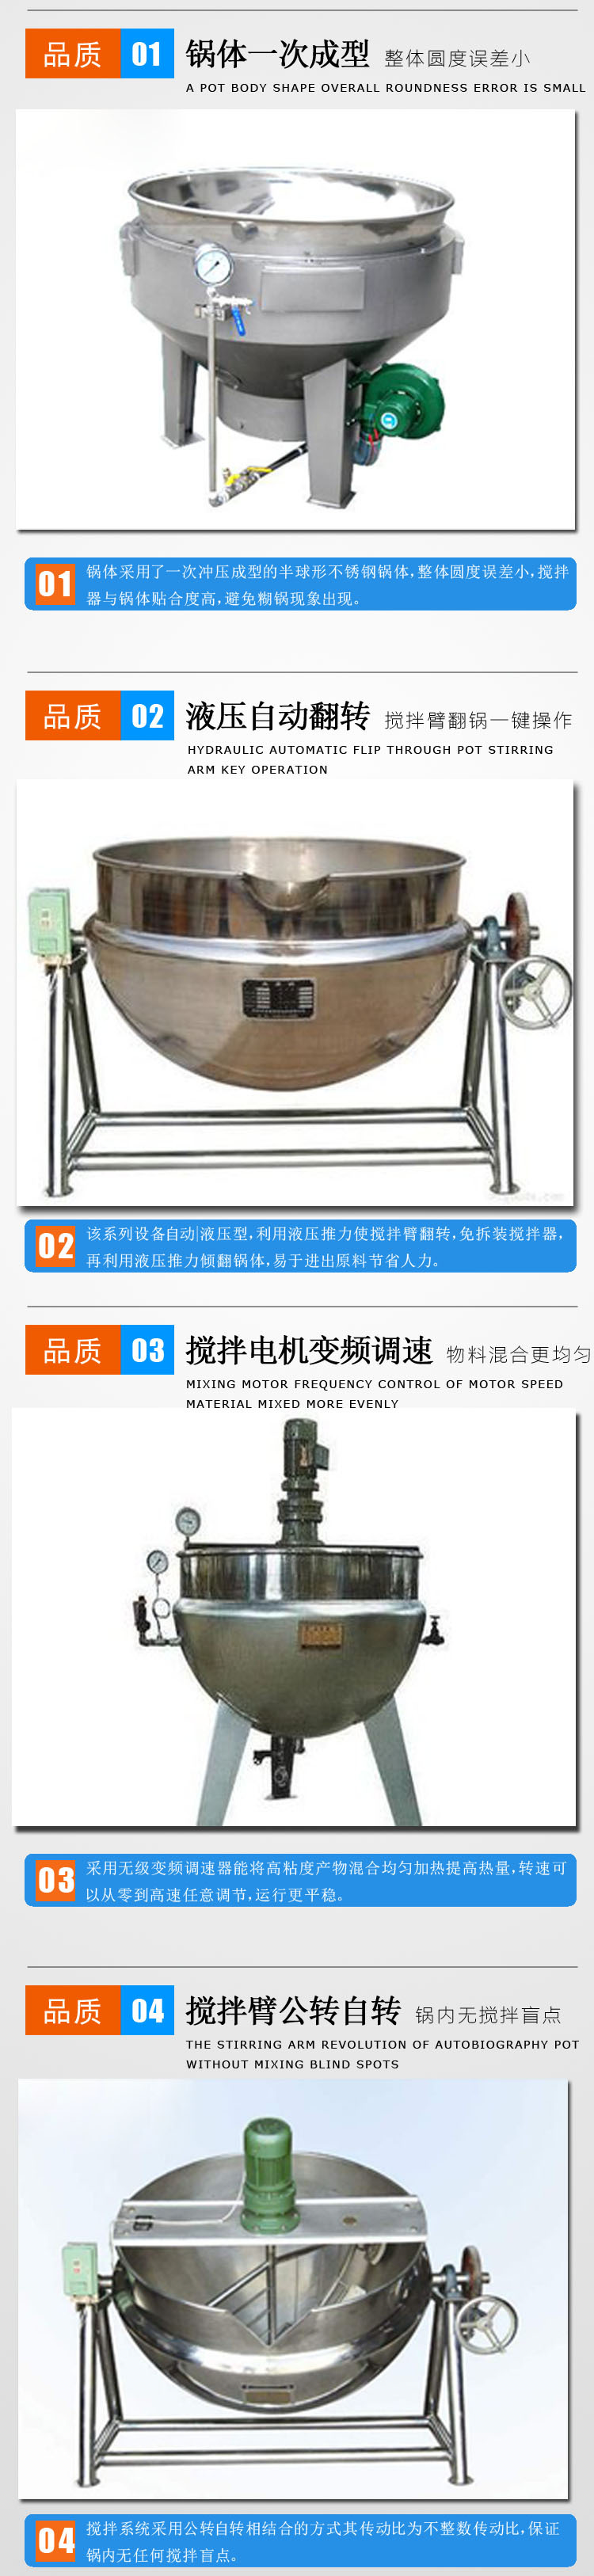 可倾式火锅酱料搅拌锅 蒸汽加热夹层锅 恒久厂家生产制造示例图6